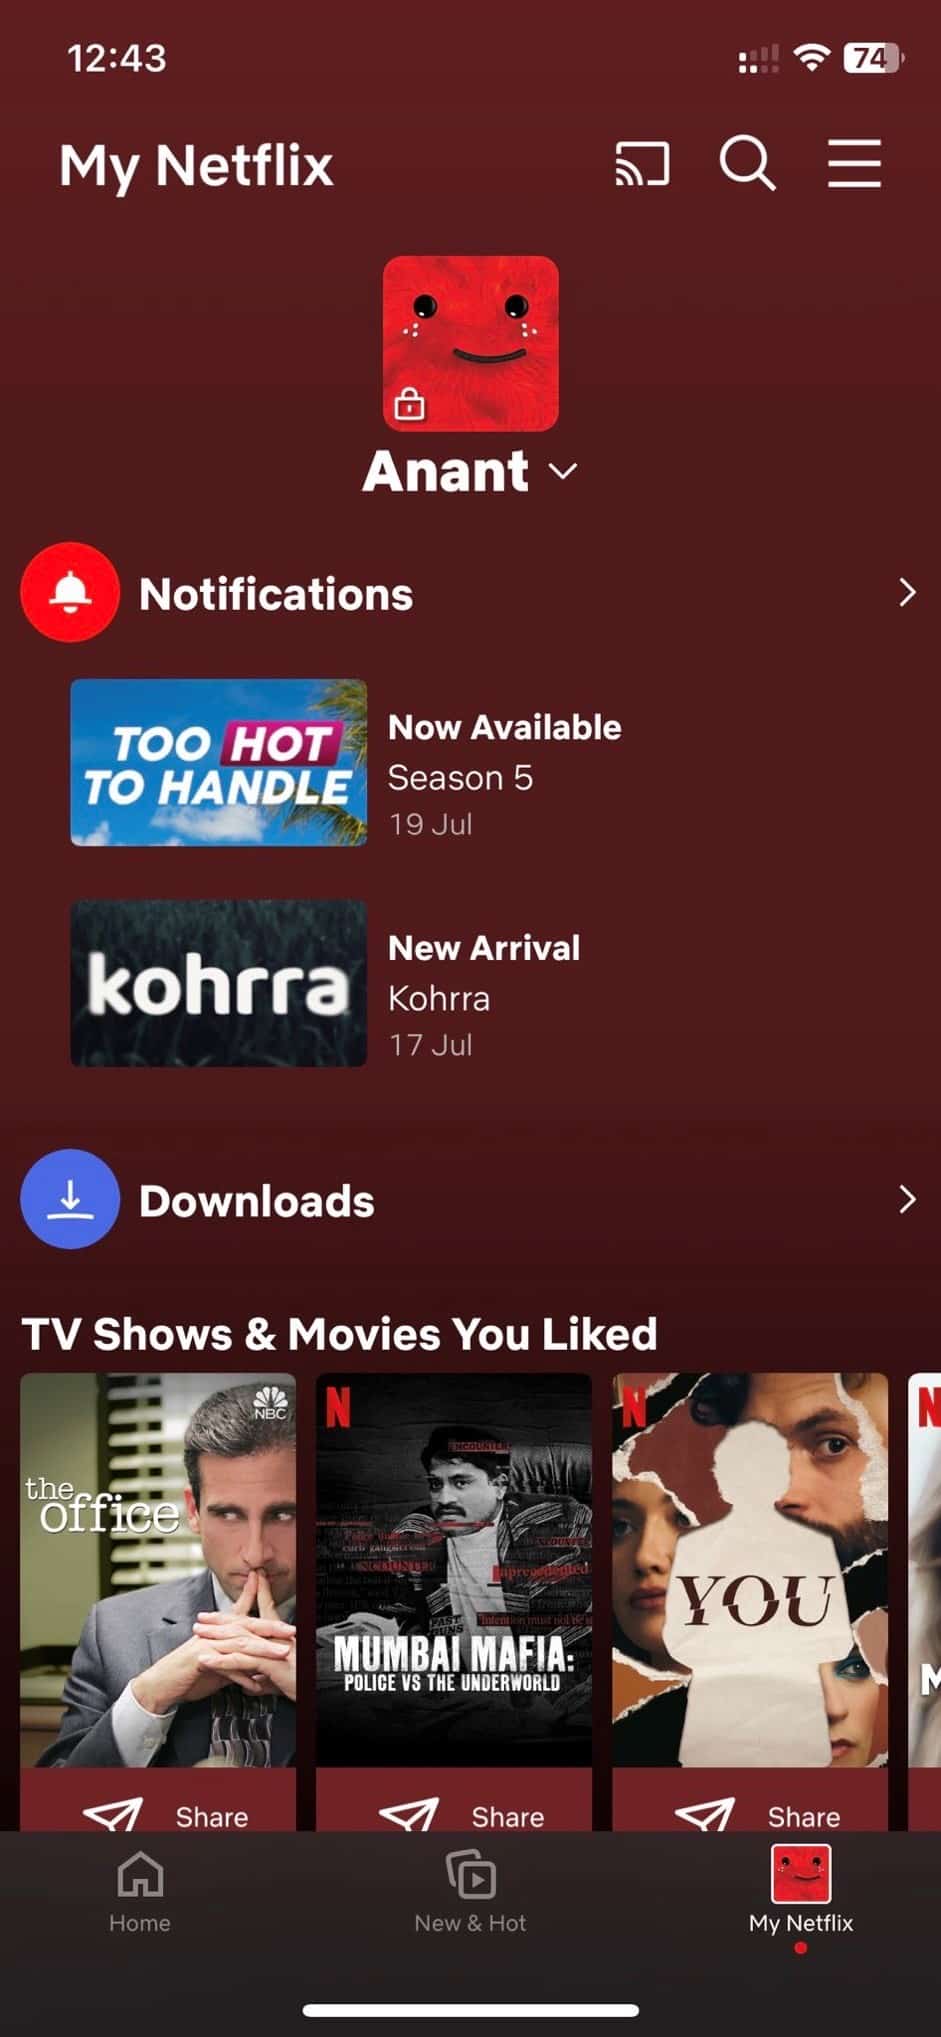 My Netflix Tab Availability